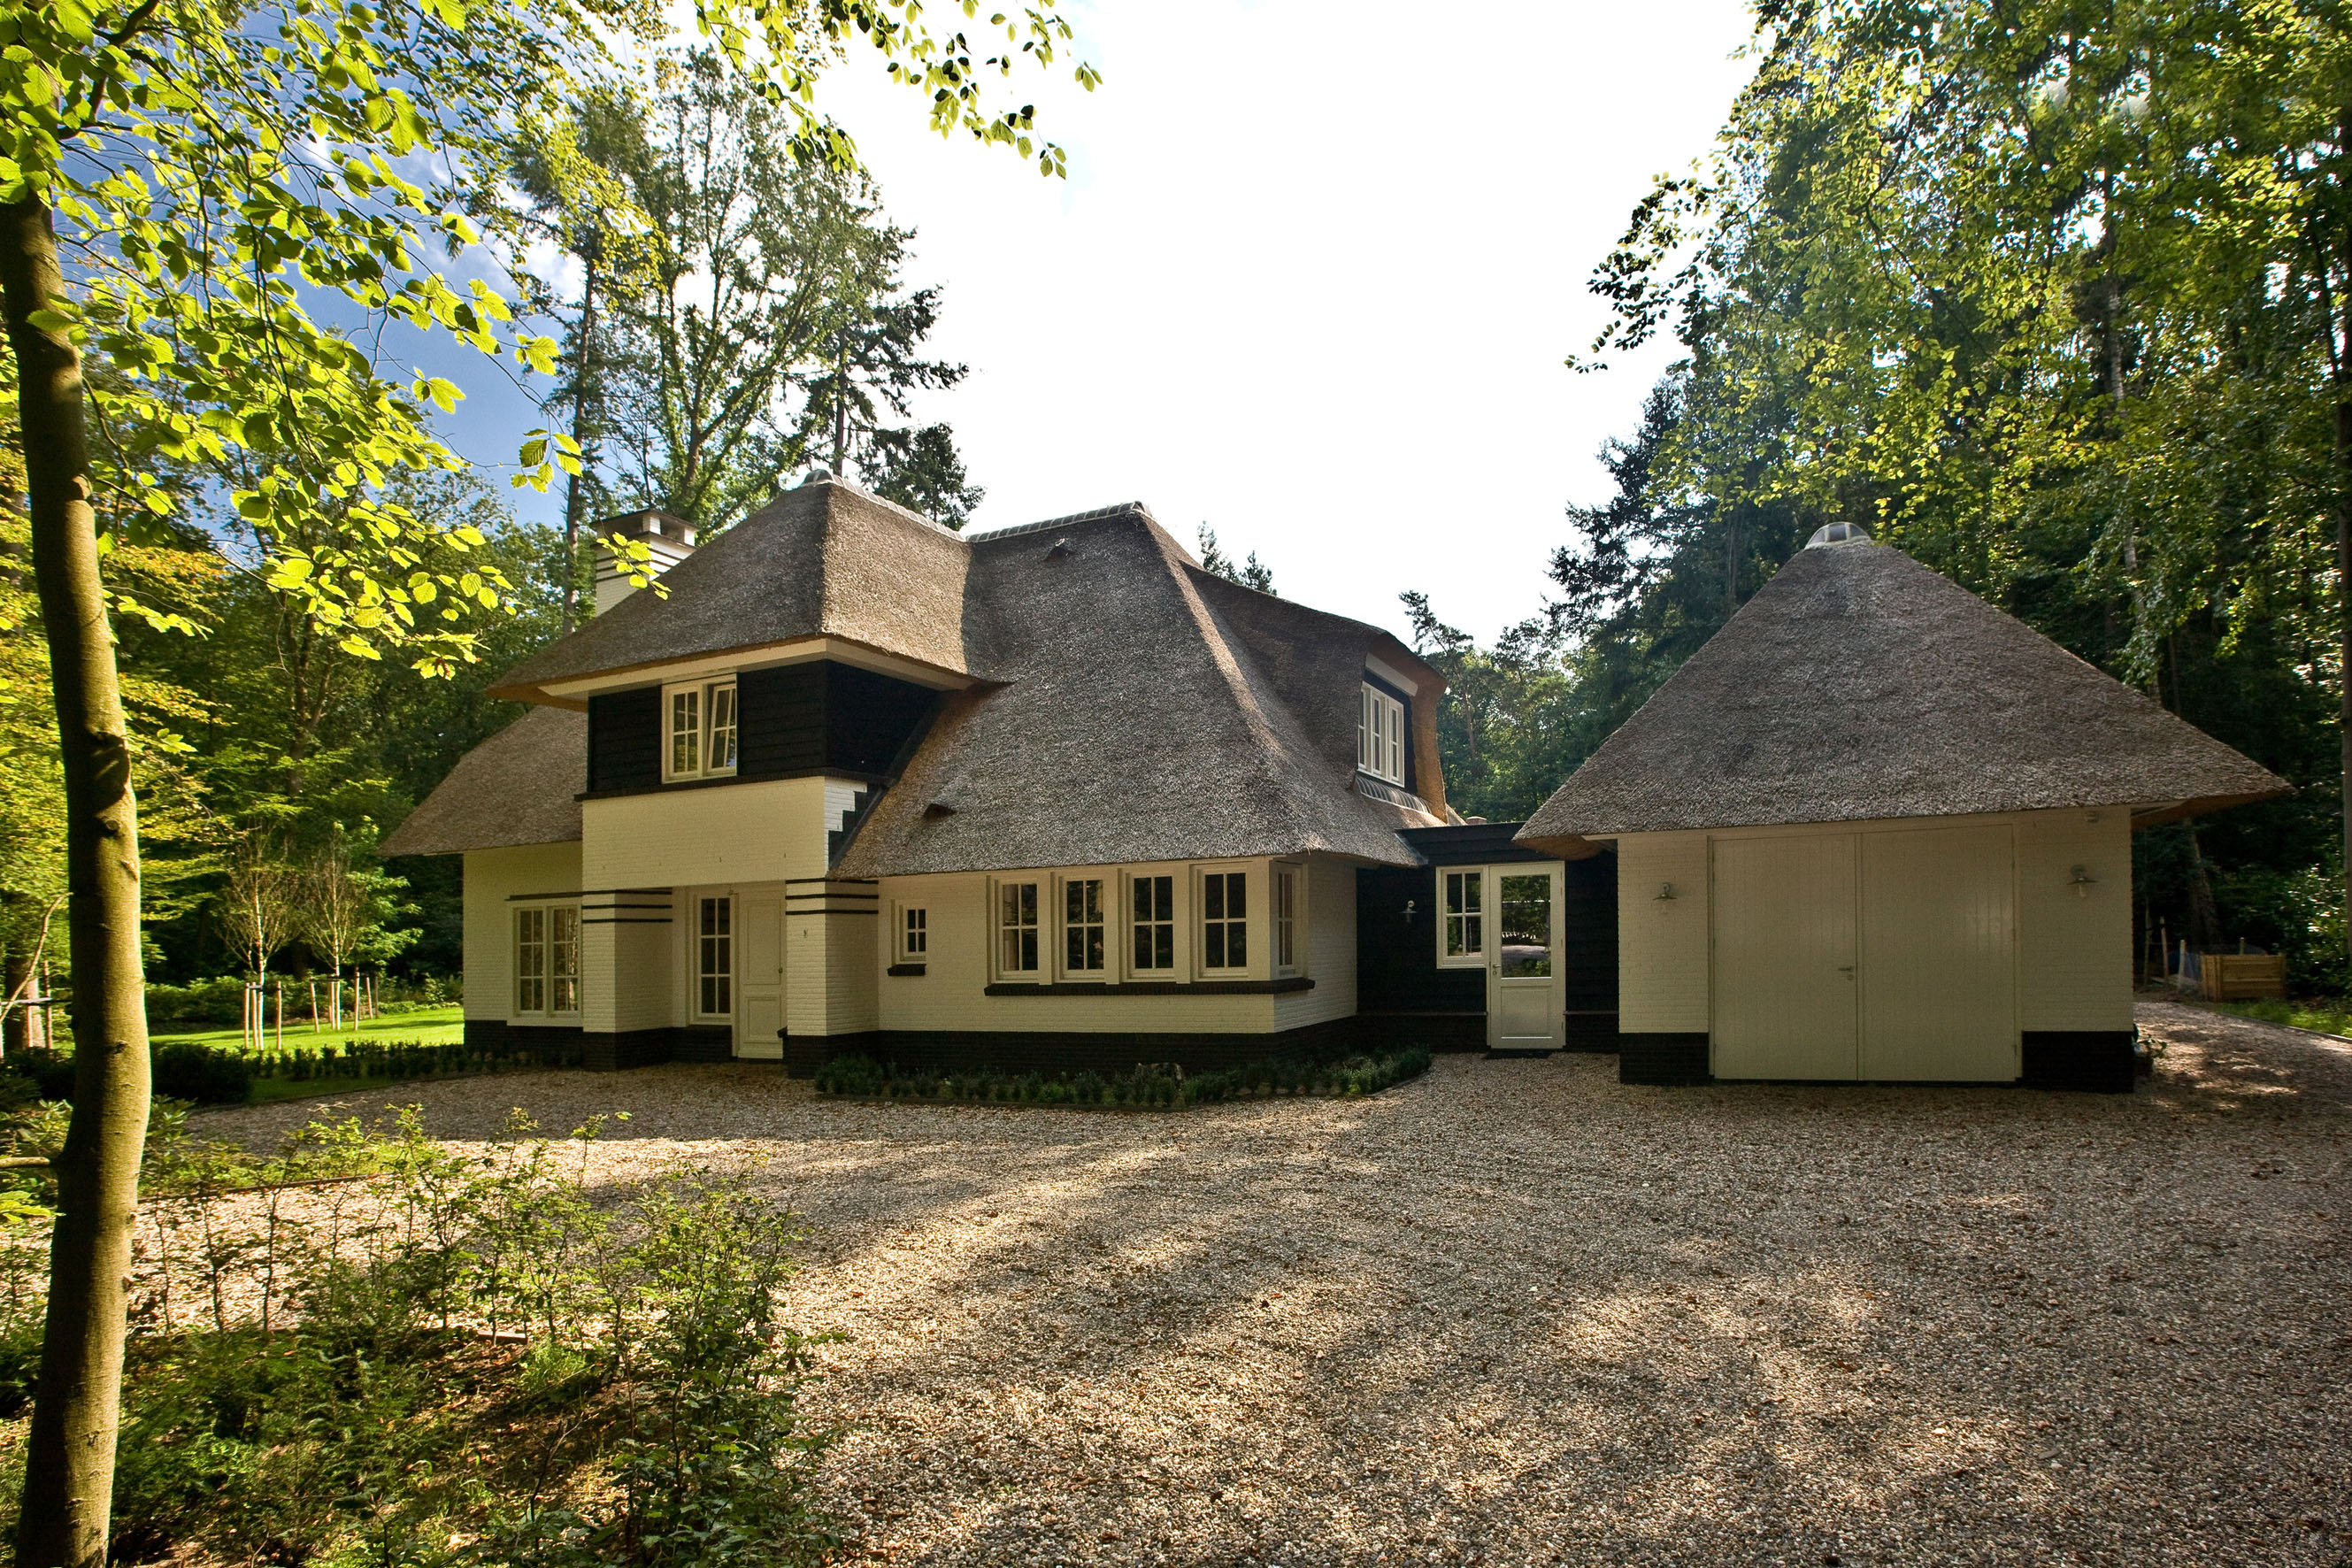 Foto: Landhuis bouwen   Voorgevel jaren 30 landhuis   Lichtenberg Exclusieve Villabouw